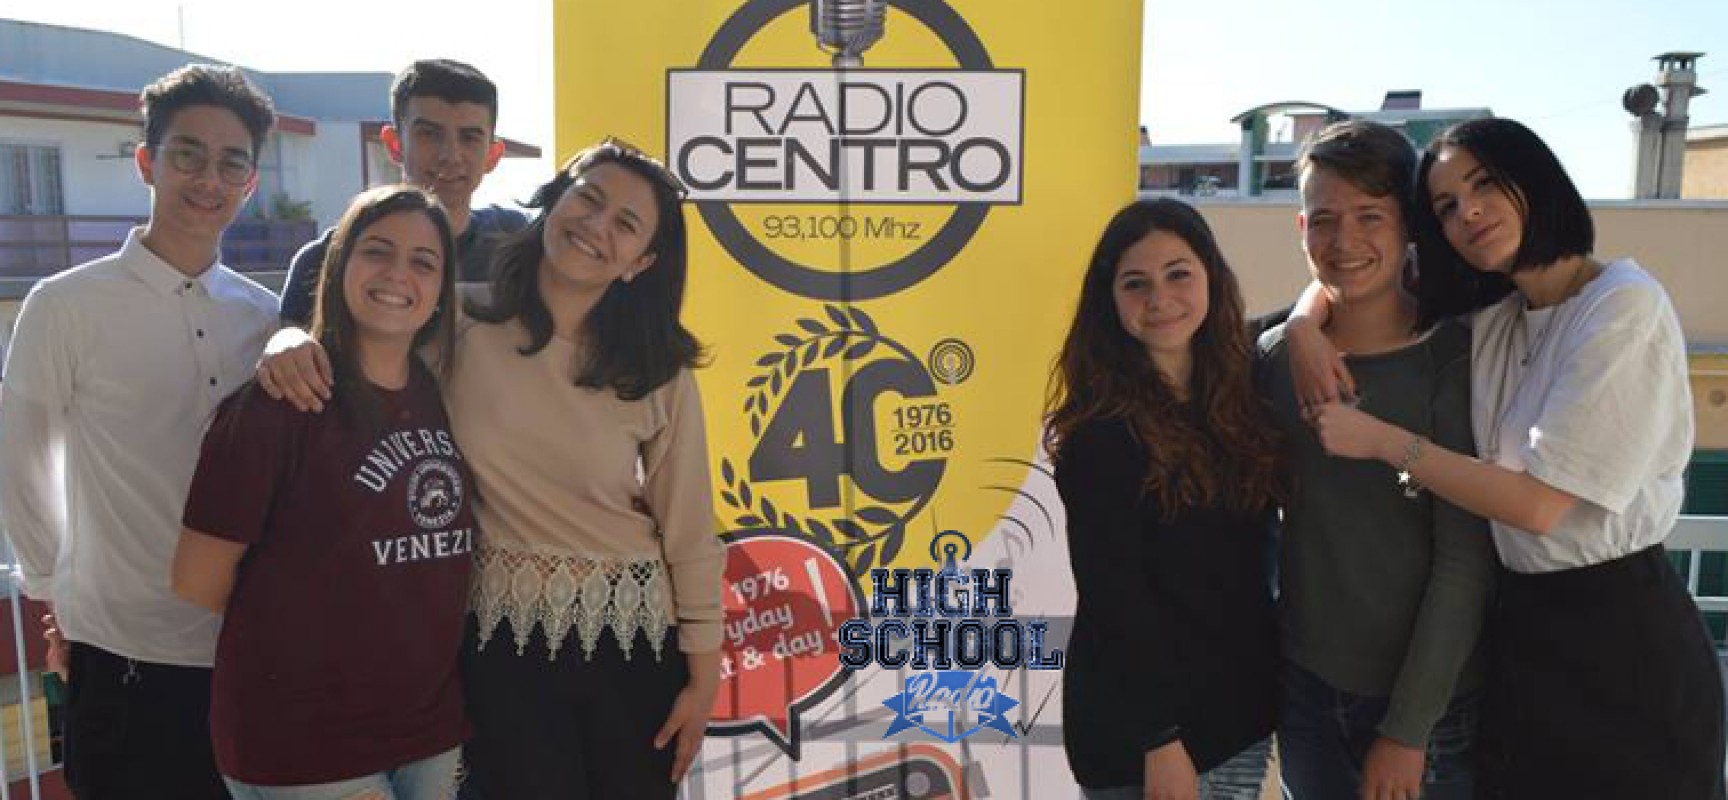 Il sindaco Francesco Spina ospite dei ragazzi dell’High School Radio su Radio Centro